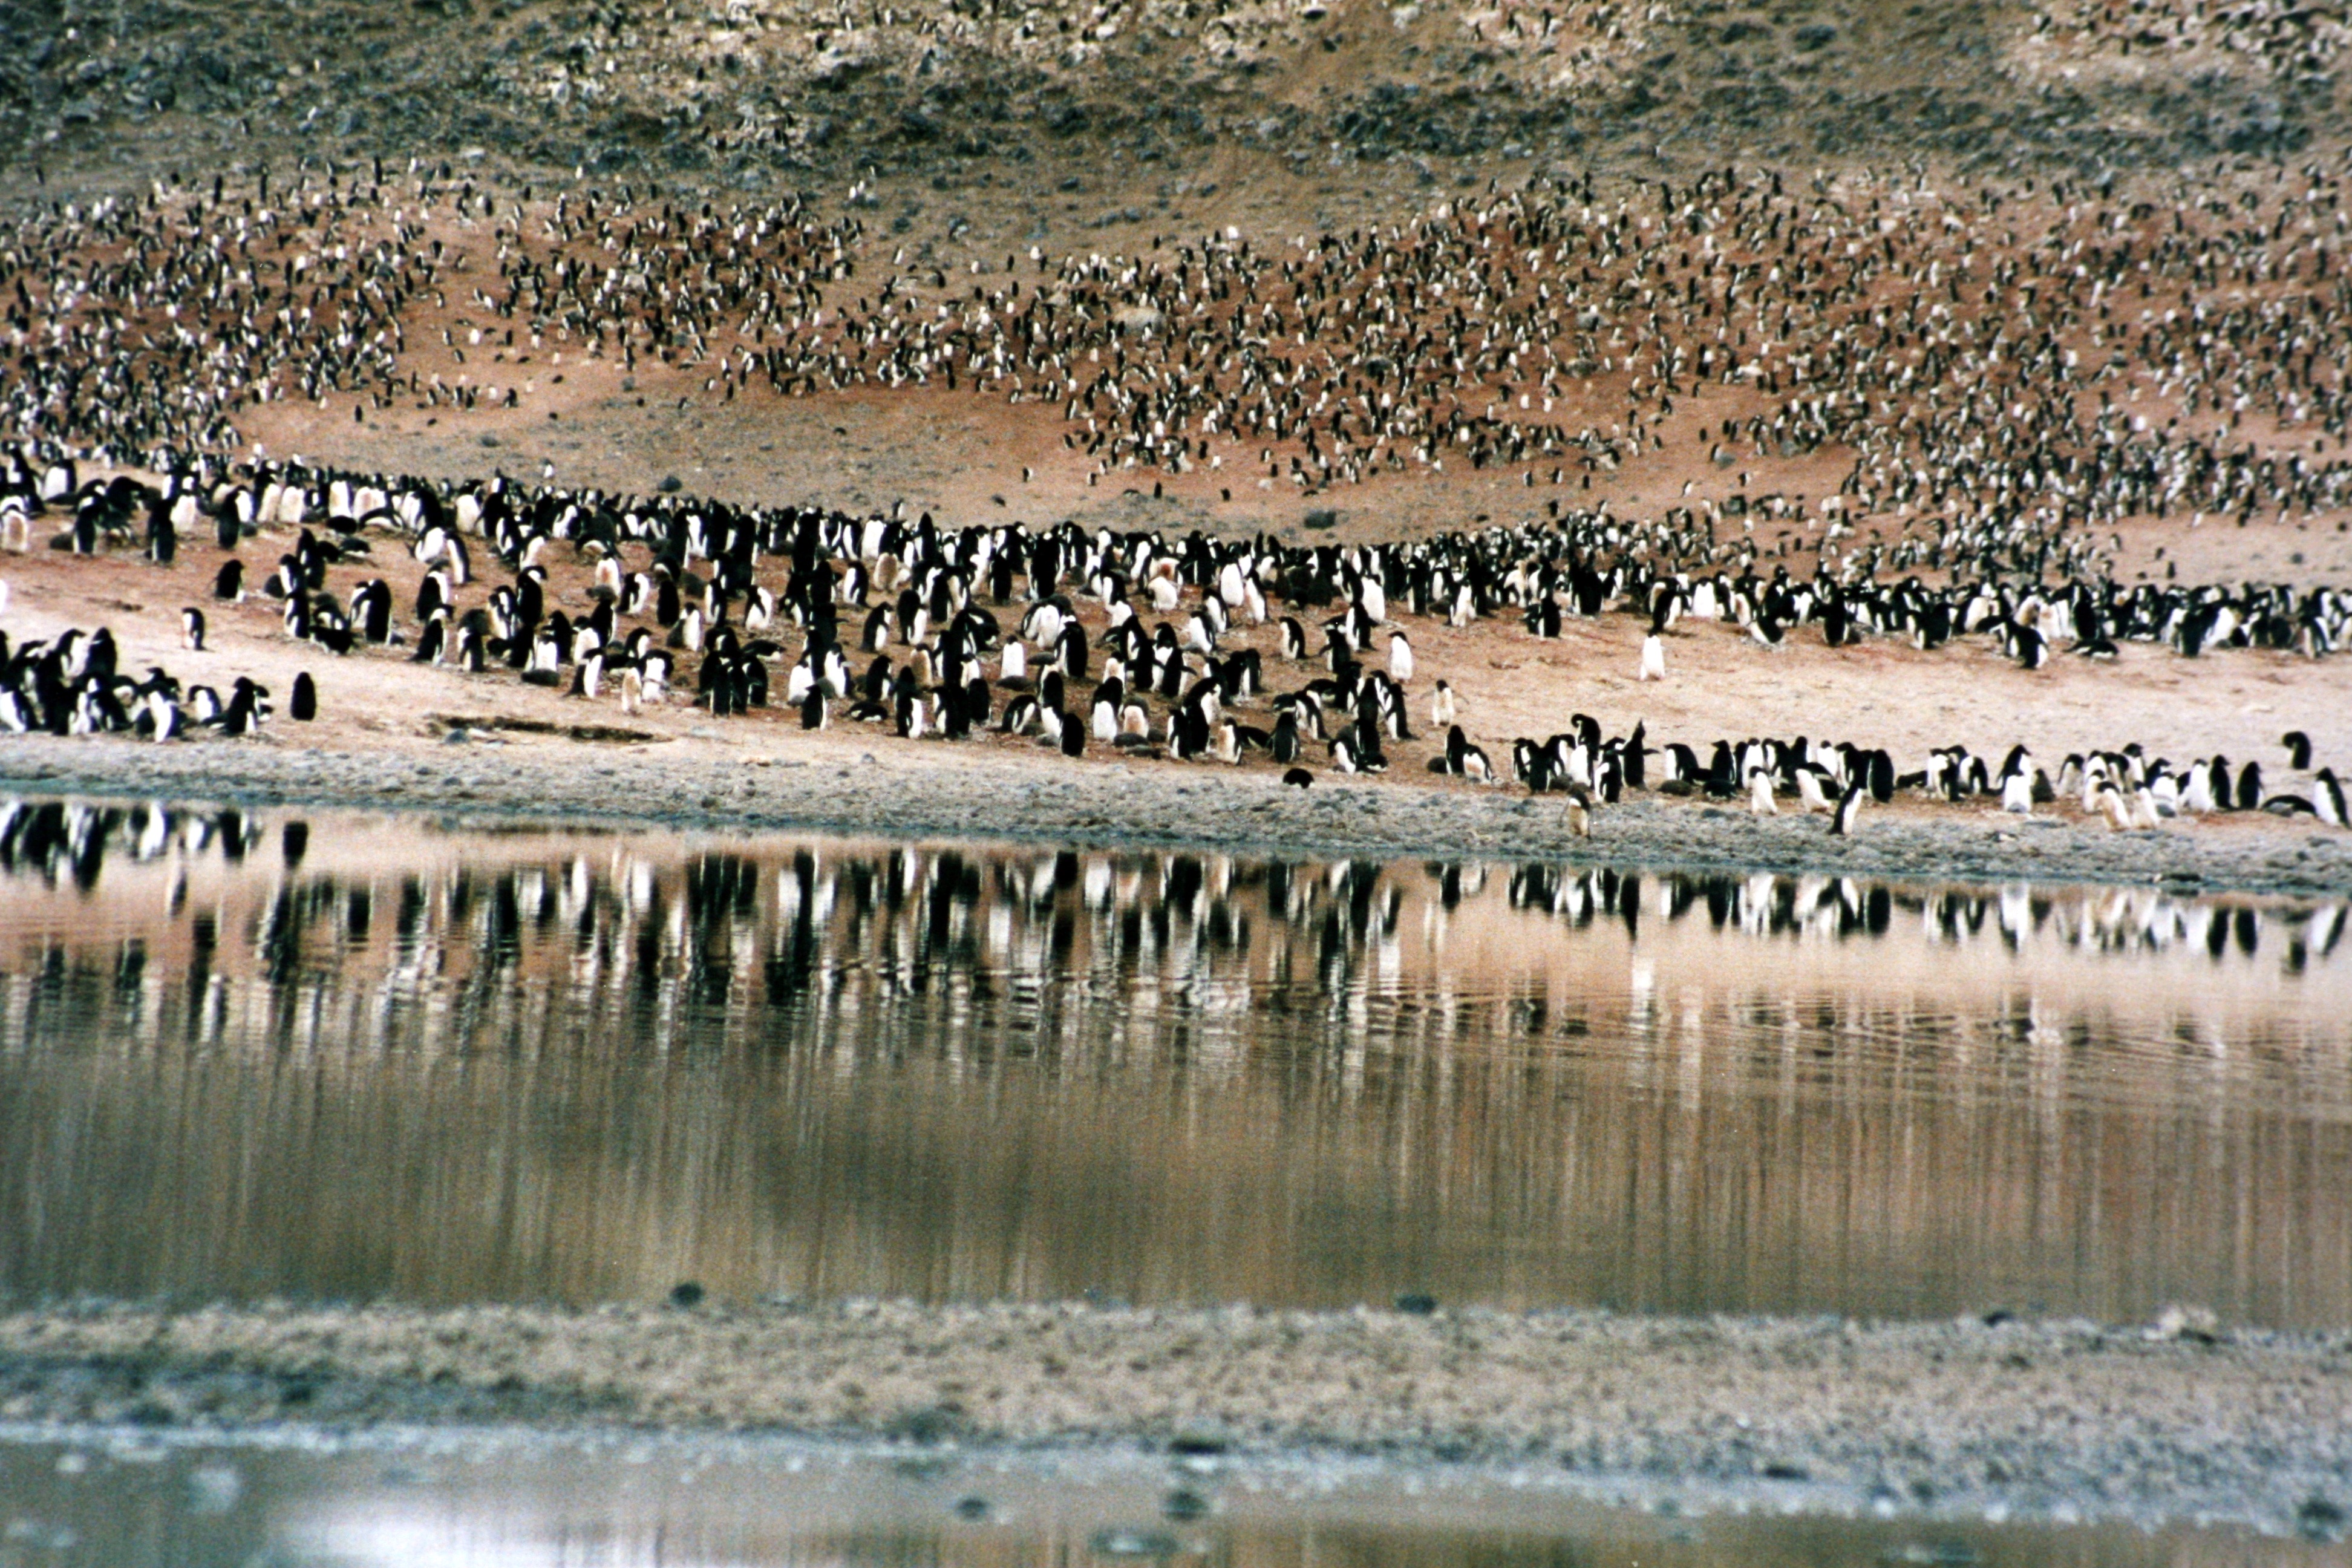 Adelie penguins katika Cape Adare katika Ross Sea, Antaktika. Penguins wengi hutawanyika juu ya udongo na miamba karibu na mwili wa maji.